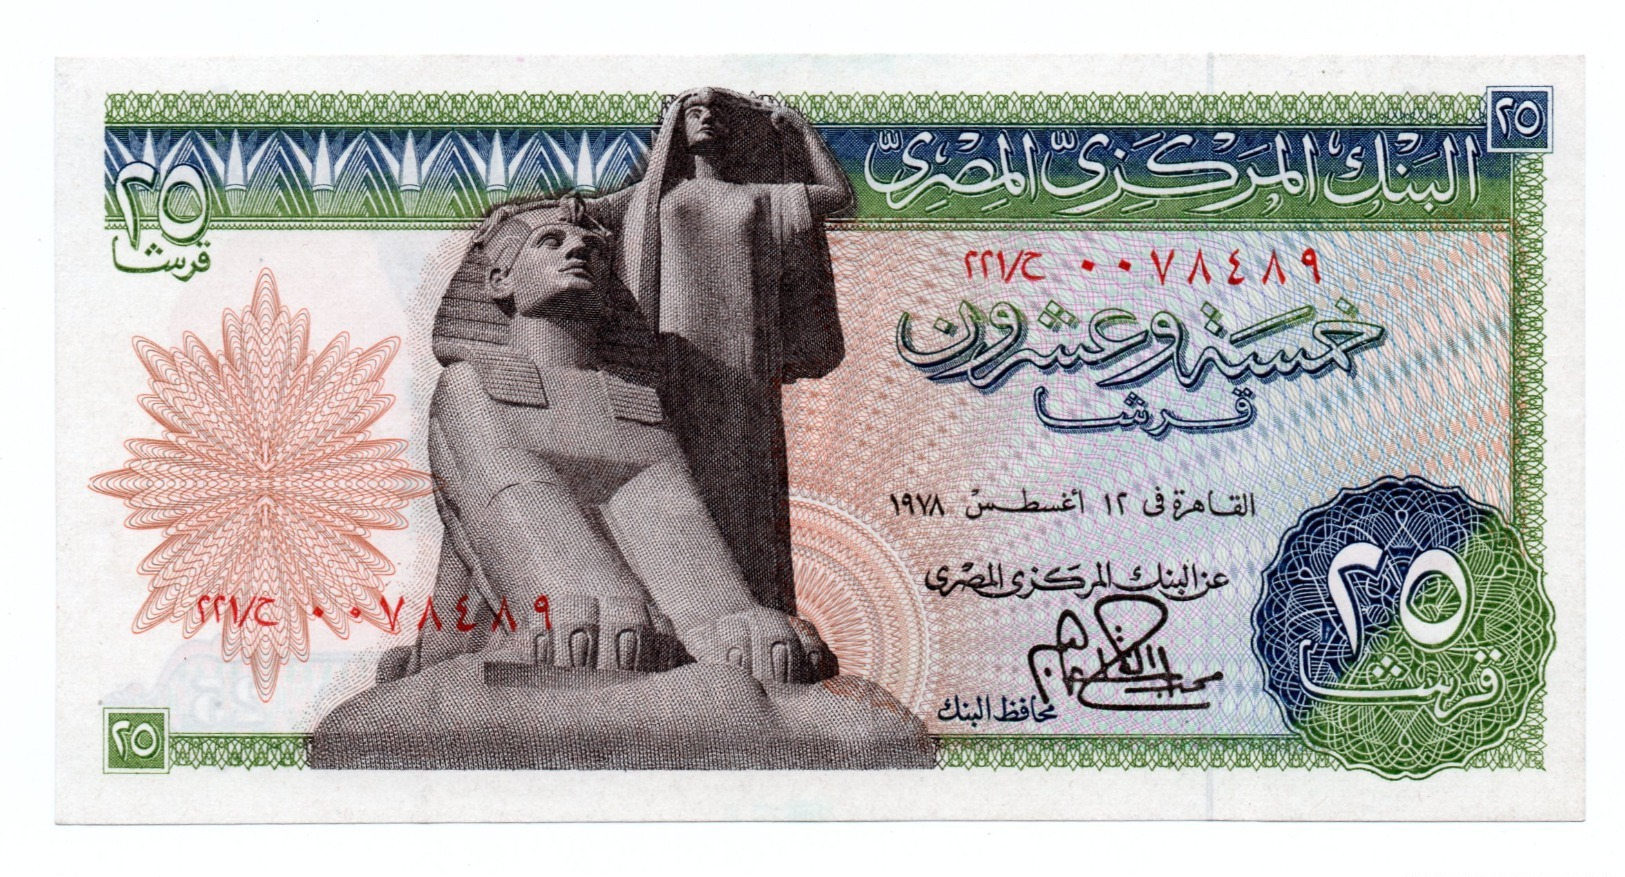 EGYPT»25 PIATRES»1976»P-47 (WORLD PAPER MONEY)»ABOUT UNC CONDITION - Egypt